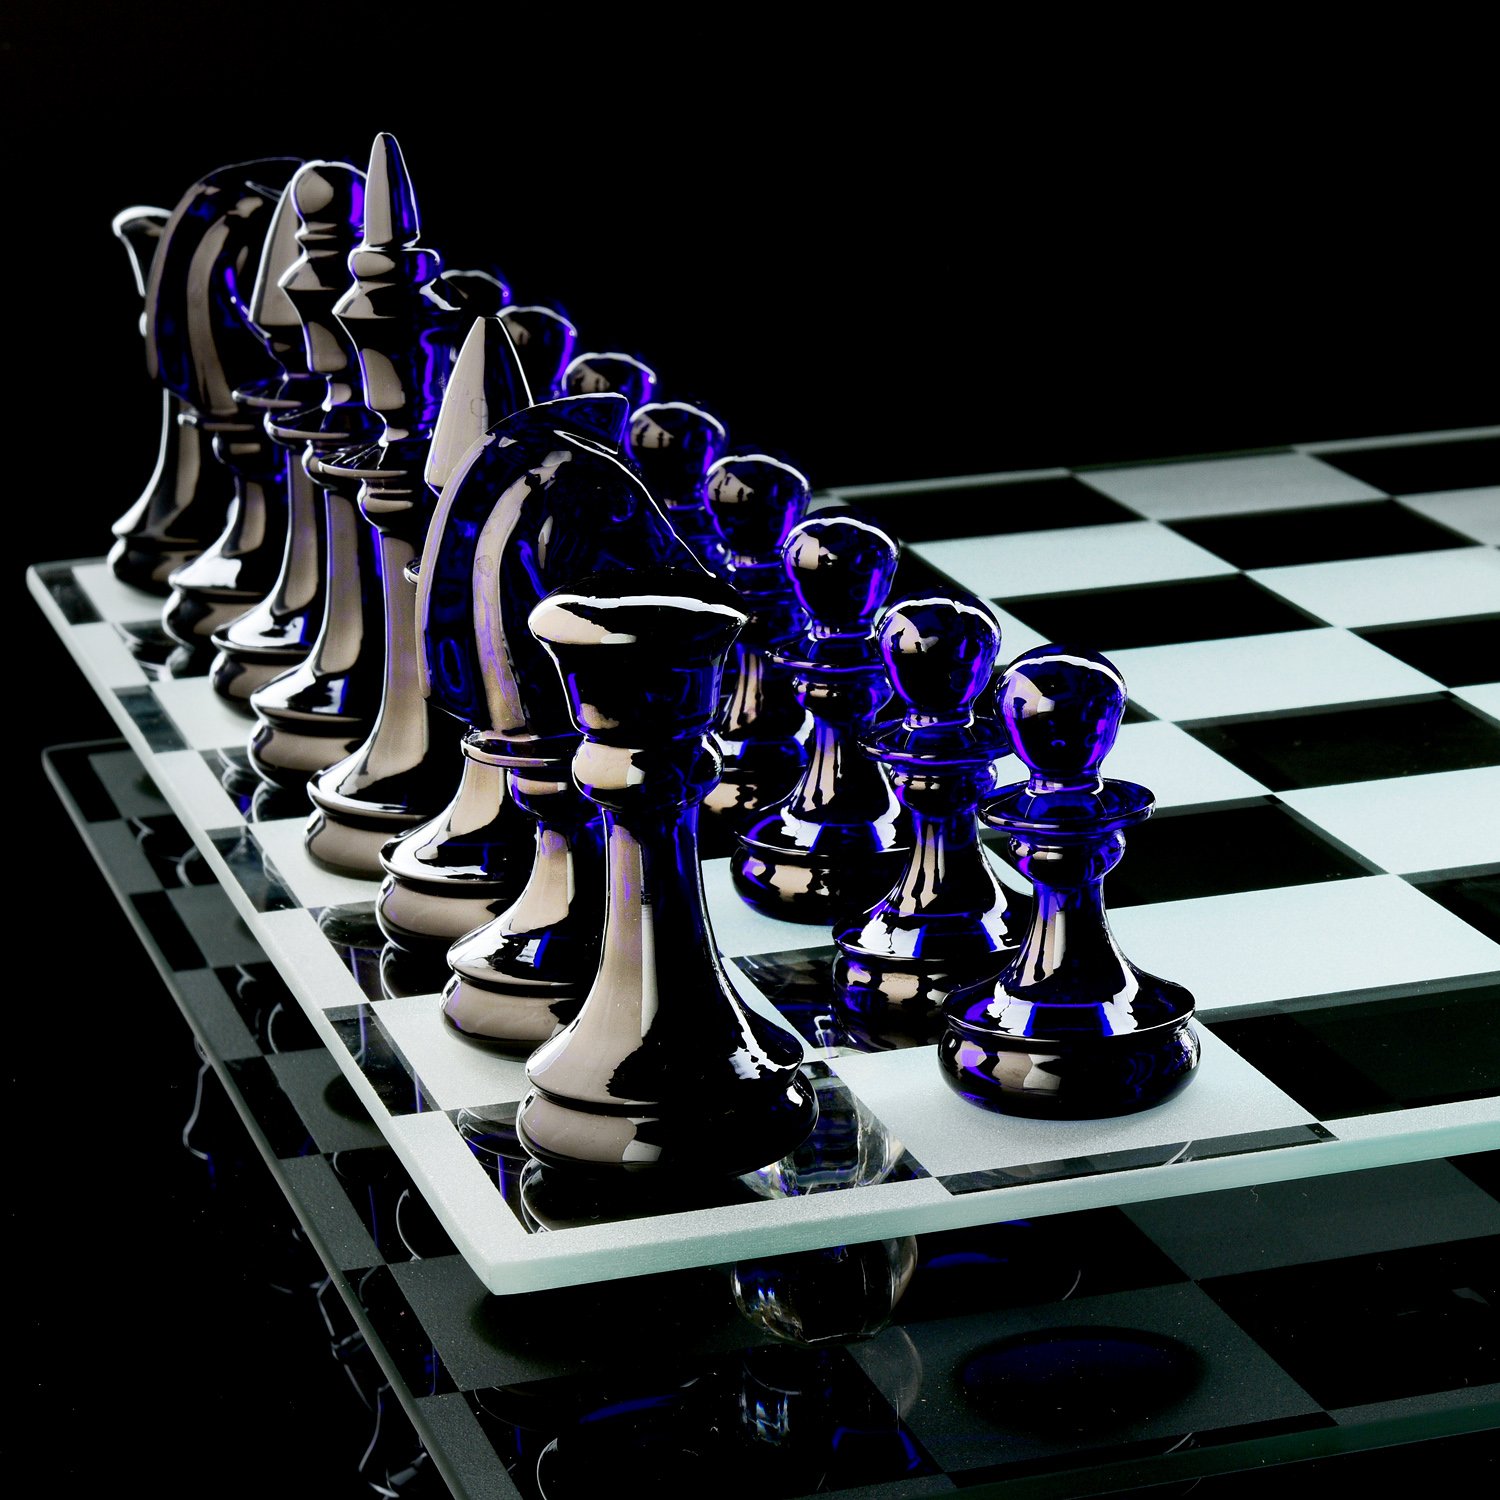 Шахматная доска 5 на 5. Avdeev Crystal шахматы. Хрустальные шахматы harkurt. Шахматная доска. Шахматы из хрусталя.